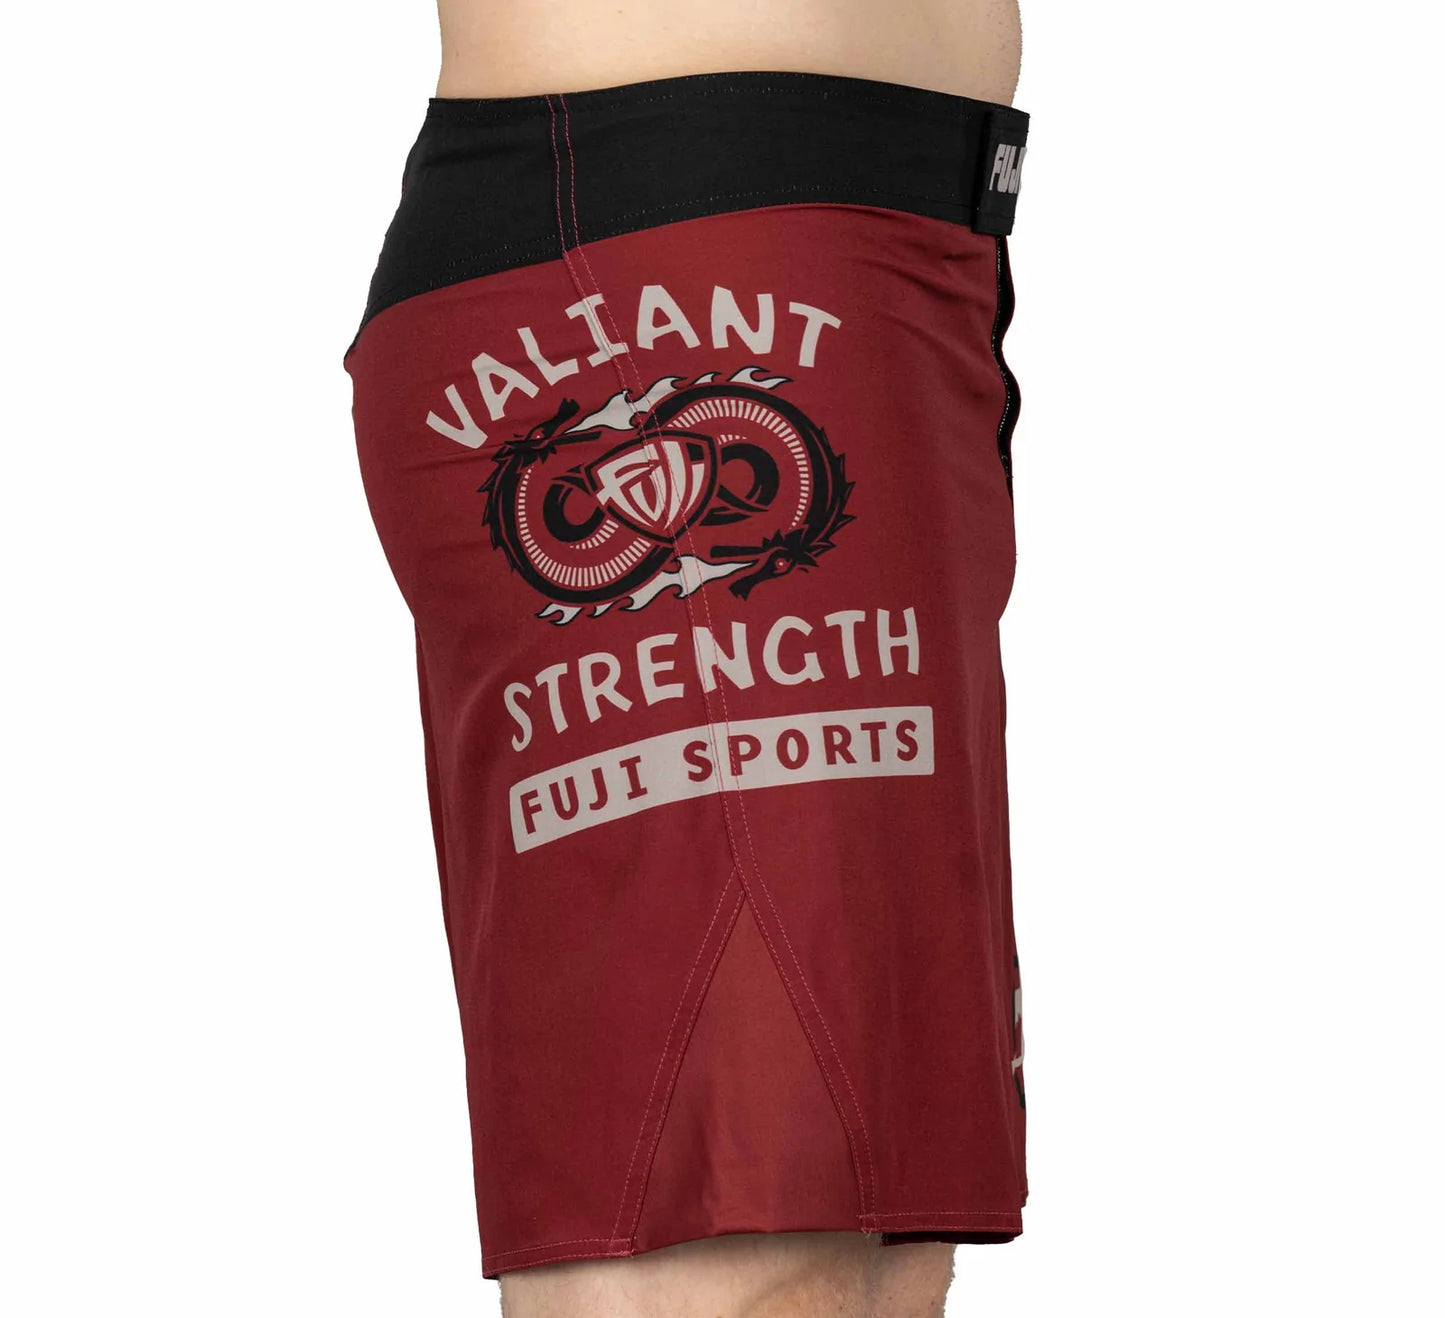 Fuji Valiant Strength Fight Shorts Maroon